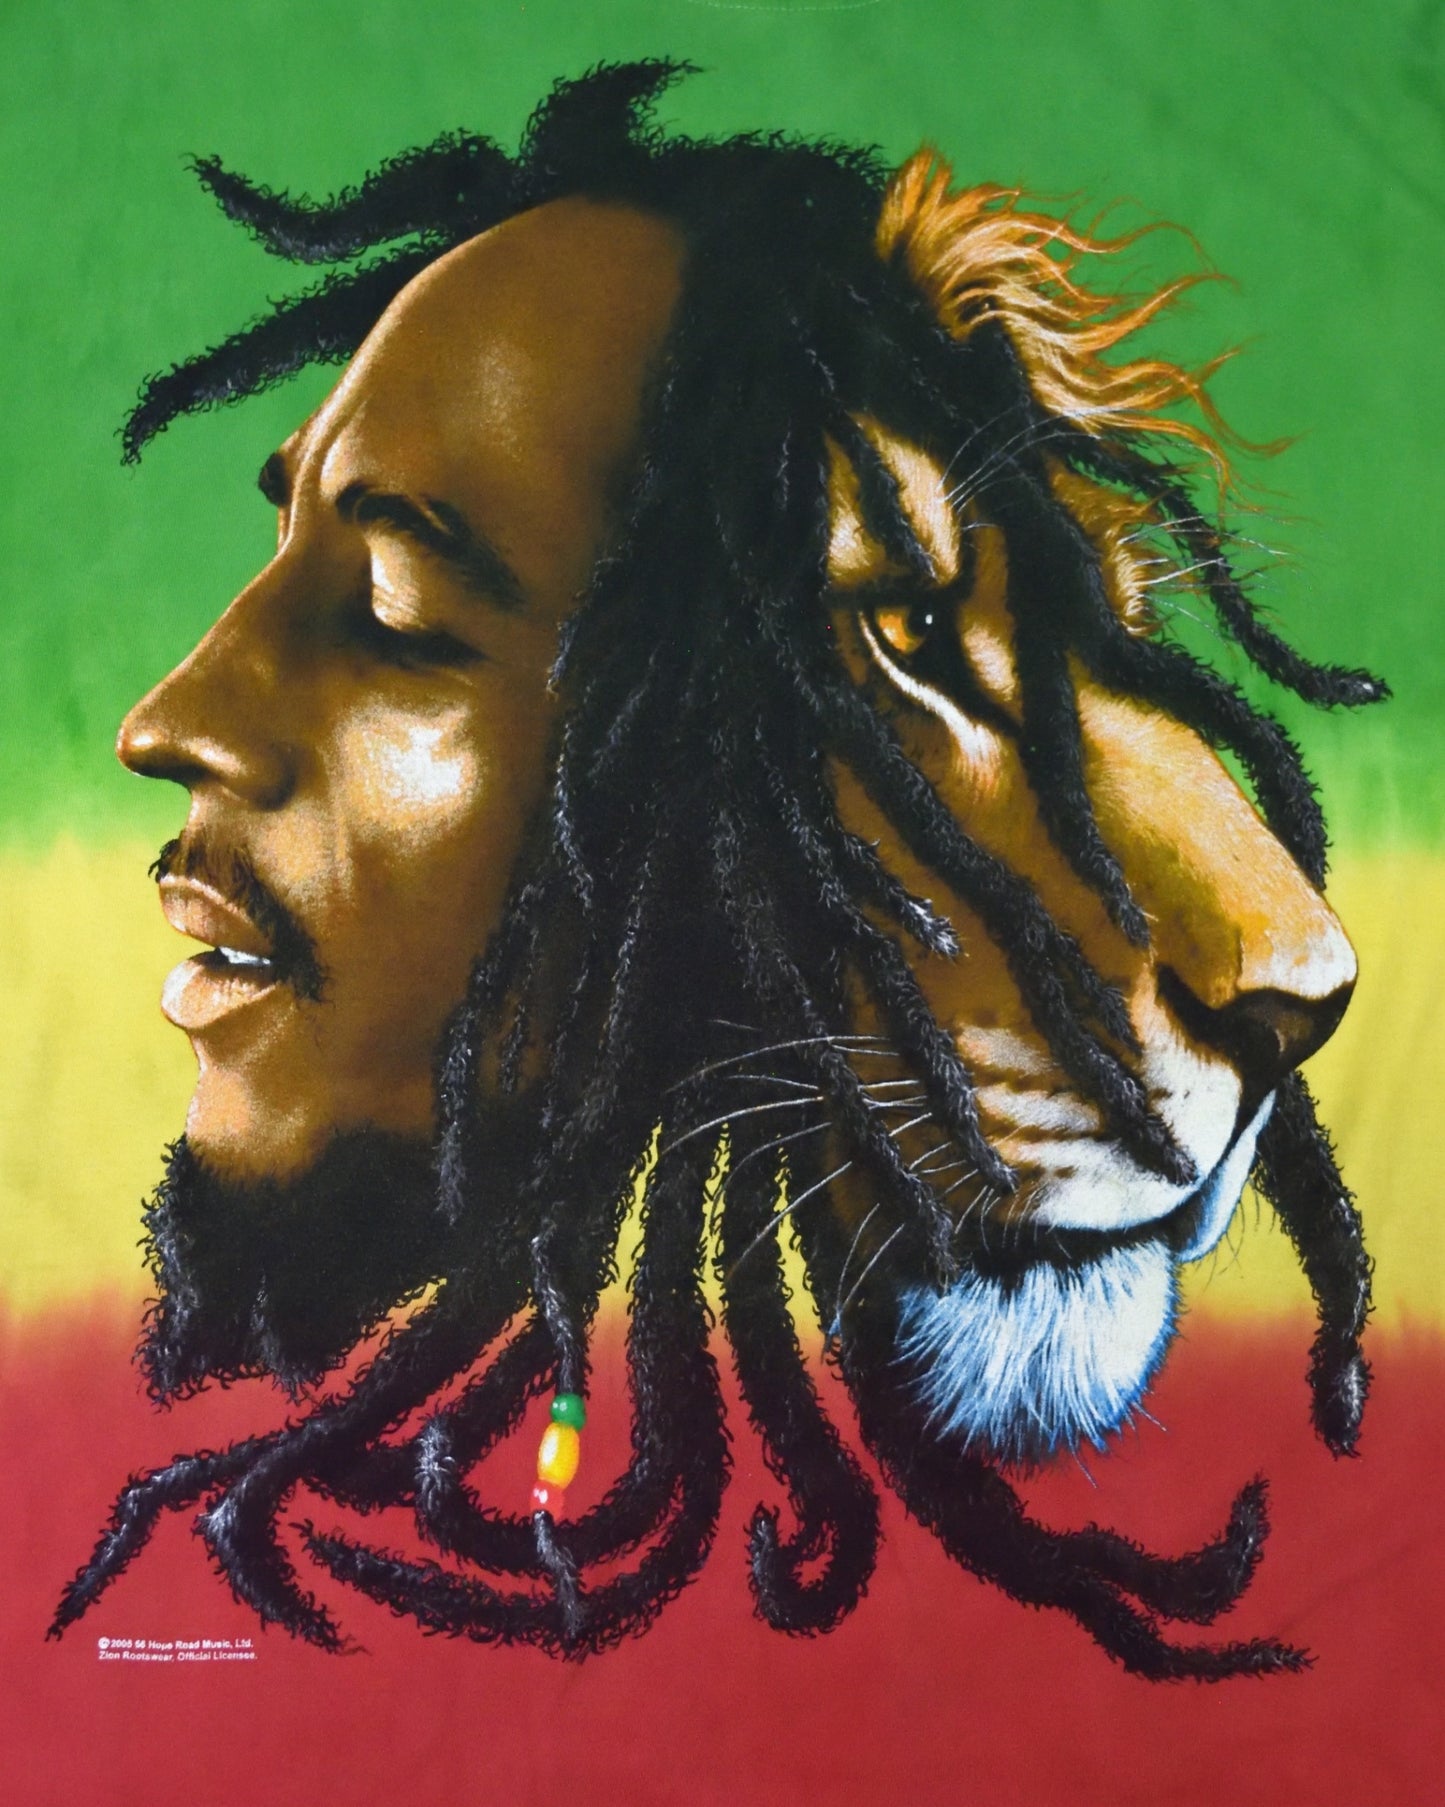 Rainbow Bob Marley T-shirt